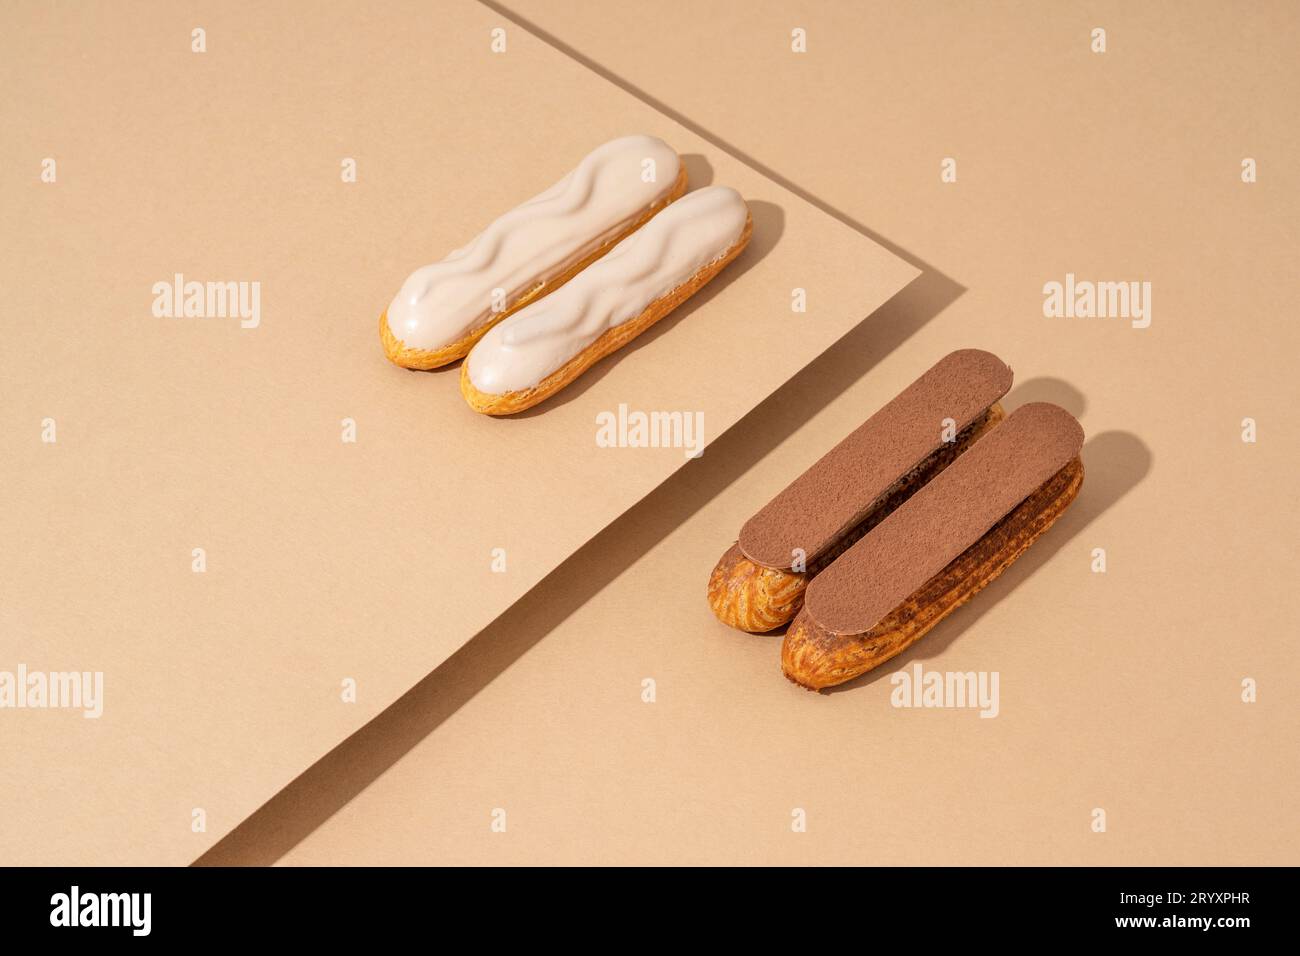 Ein Set köstlicher glasierter Donuts in verschiedenen Geschmacksrichtungen, auf einem Papppapier in einer einladenden Präsentation angeordnet Stockfoto